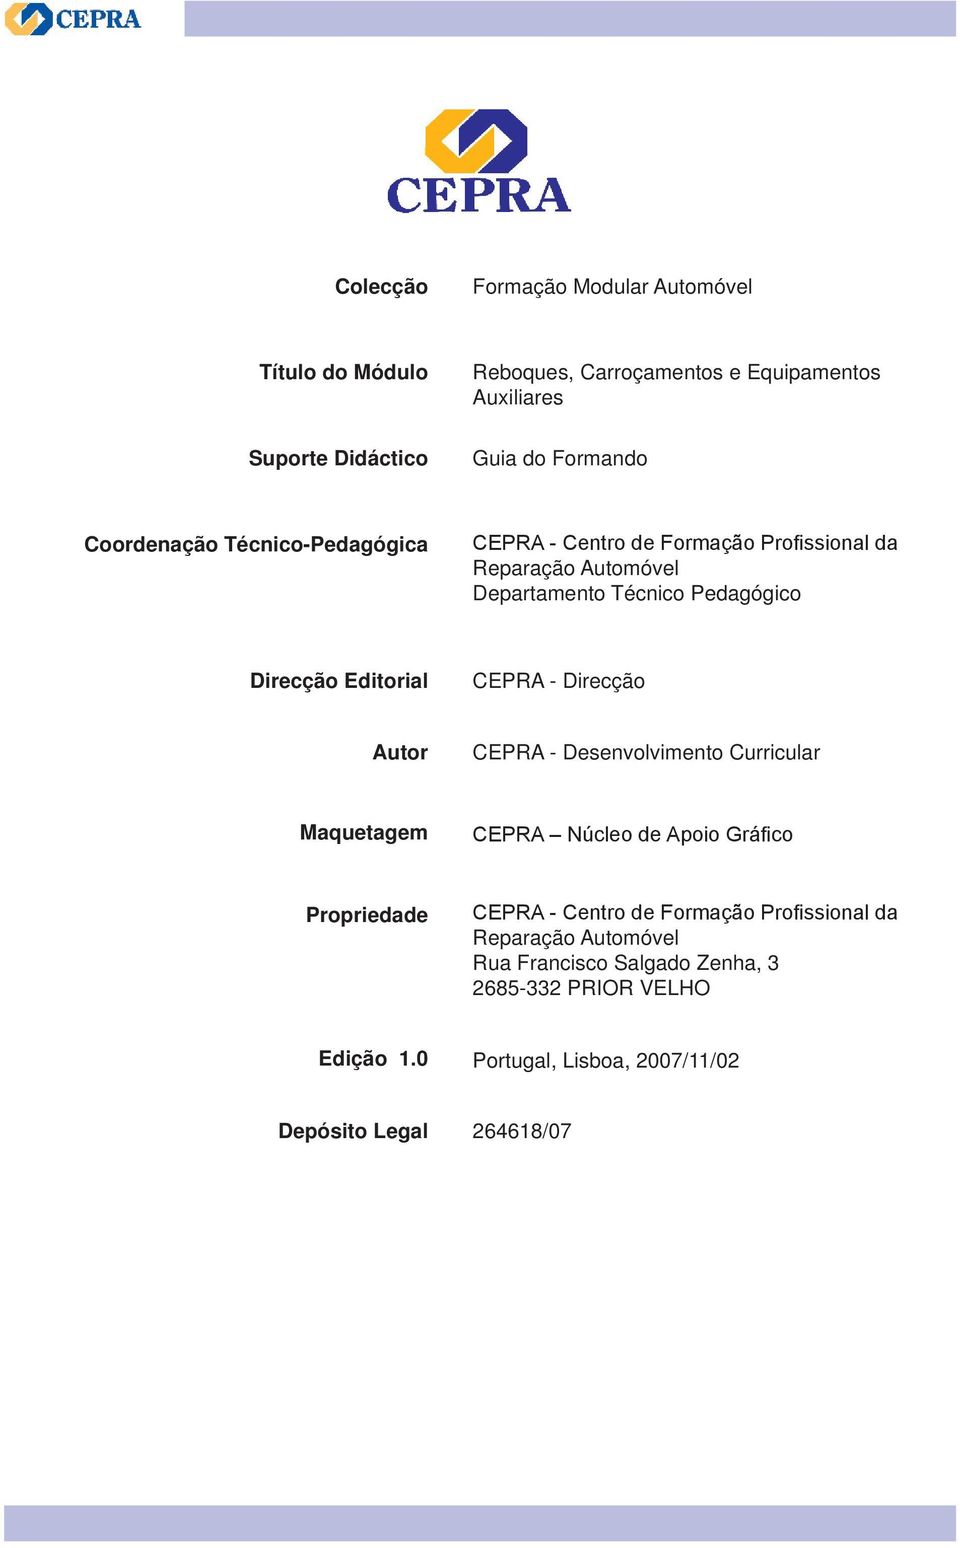 Editorial CEPRA - Direcção Autor CEPRA - Desenvolvimento Curricular Maquetagem CEPRA Núcleo de Apoio Gráfico Propriedade CEPRA - Centro de